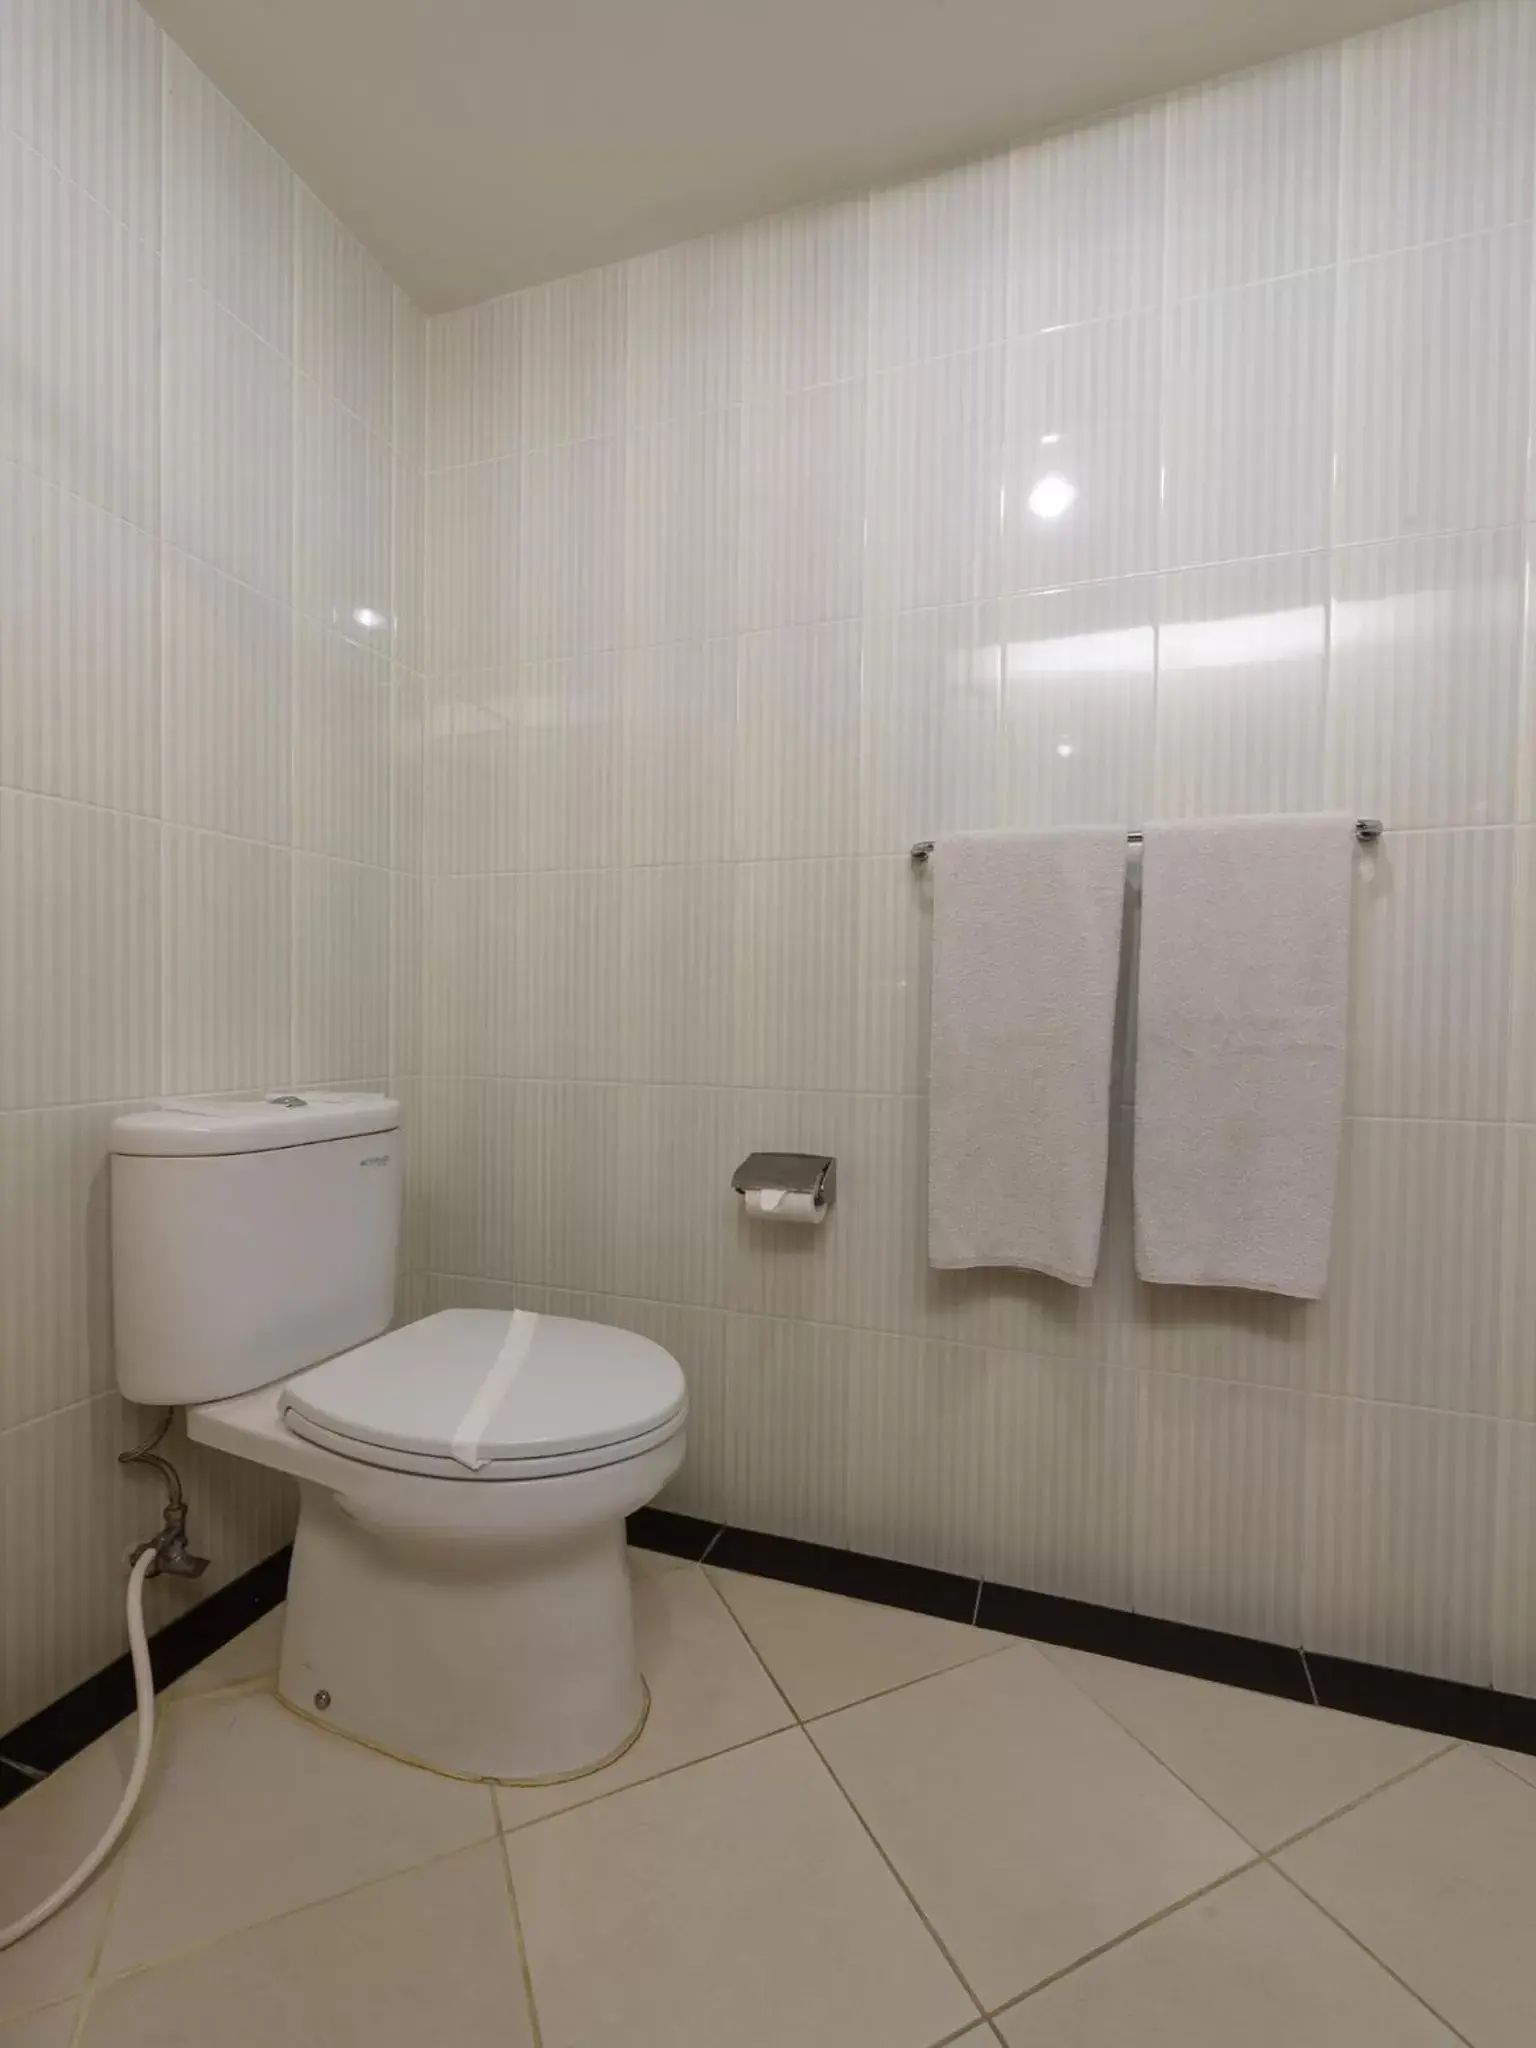 Toilet, Bathroom in Cipta Hotel Wahid Hasyim